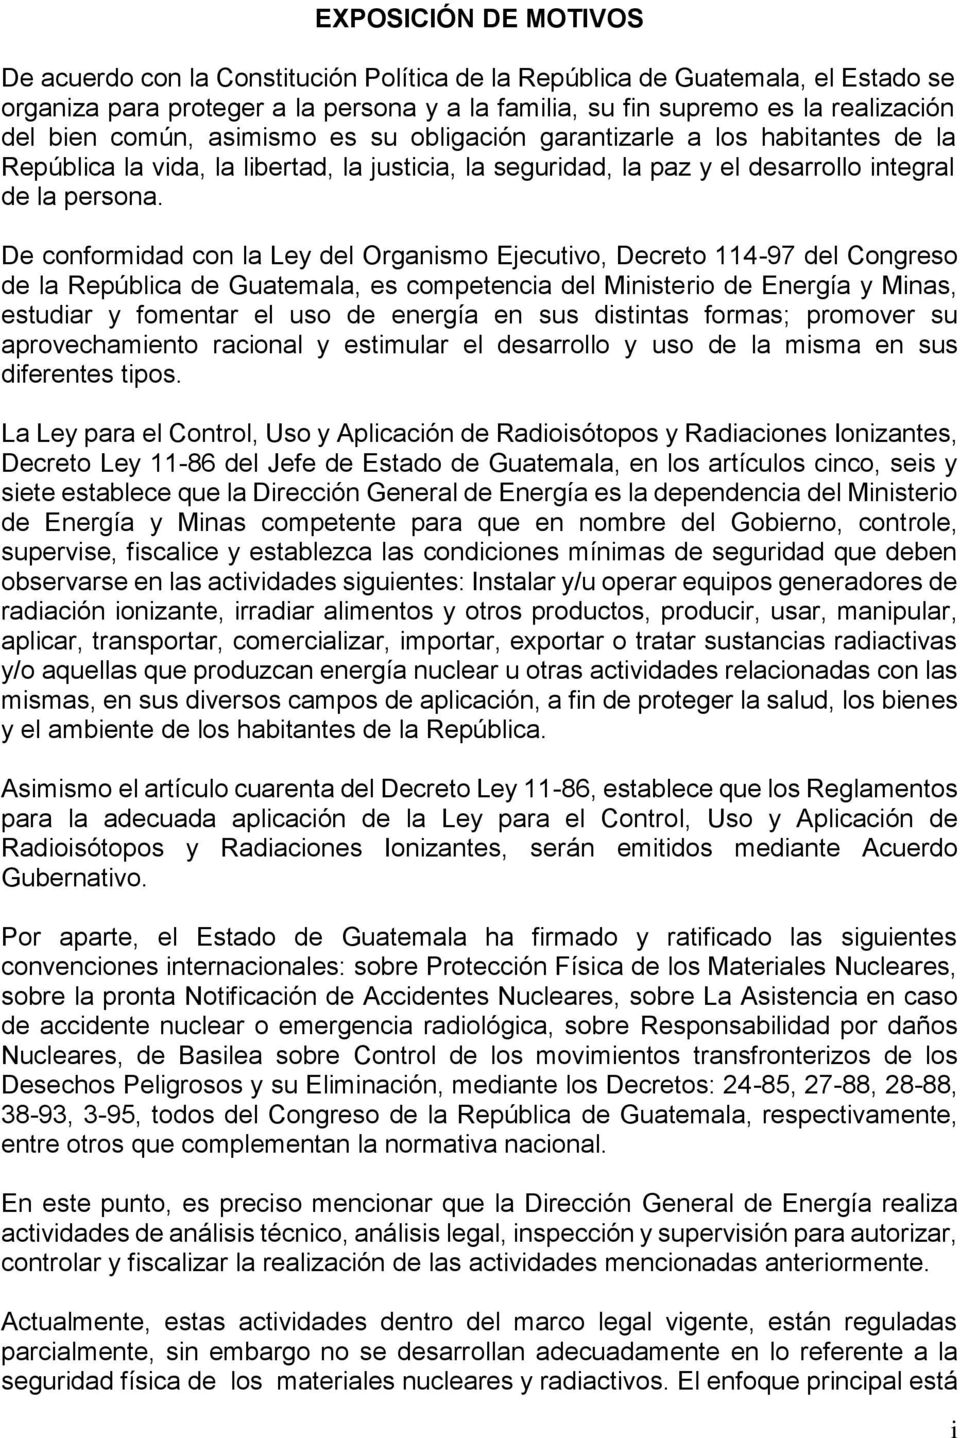 De conformidad con la Ley del Organismo Ejecutivo, Decreto 114-97 del Congreso de la República de Guatemala, es competencia del Ministerio de Energía y Minas, estudiar y fomentar el uso de energía en